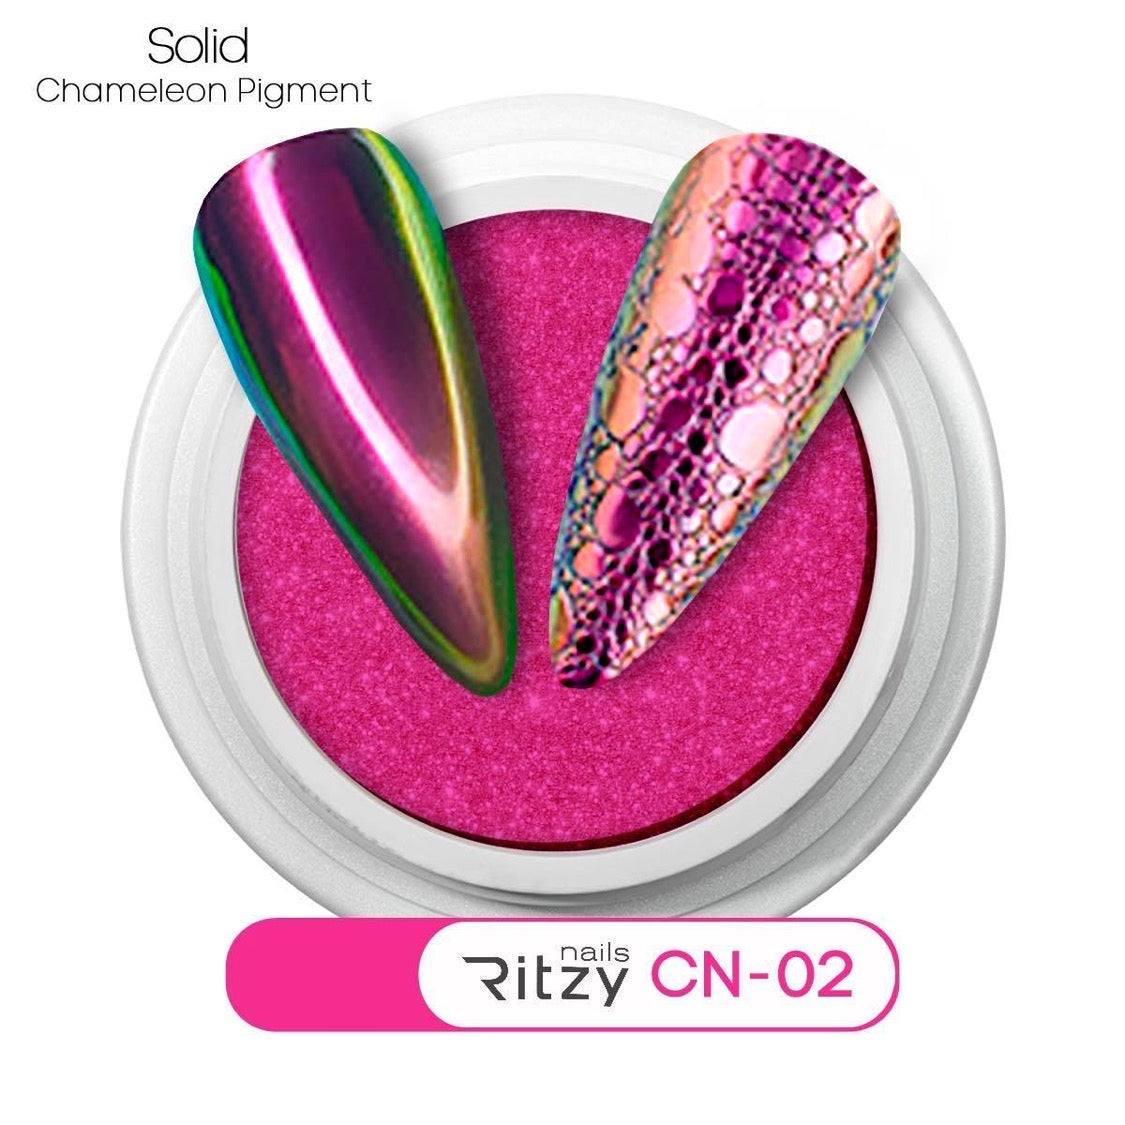 Chameleon pigment CN-02